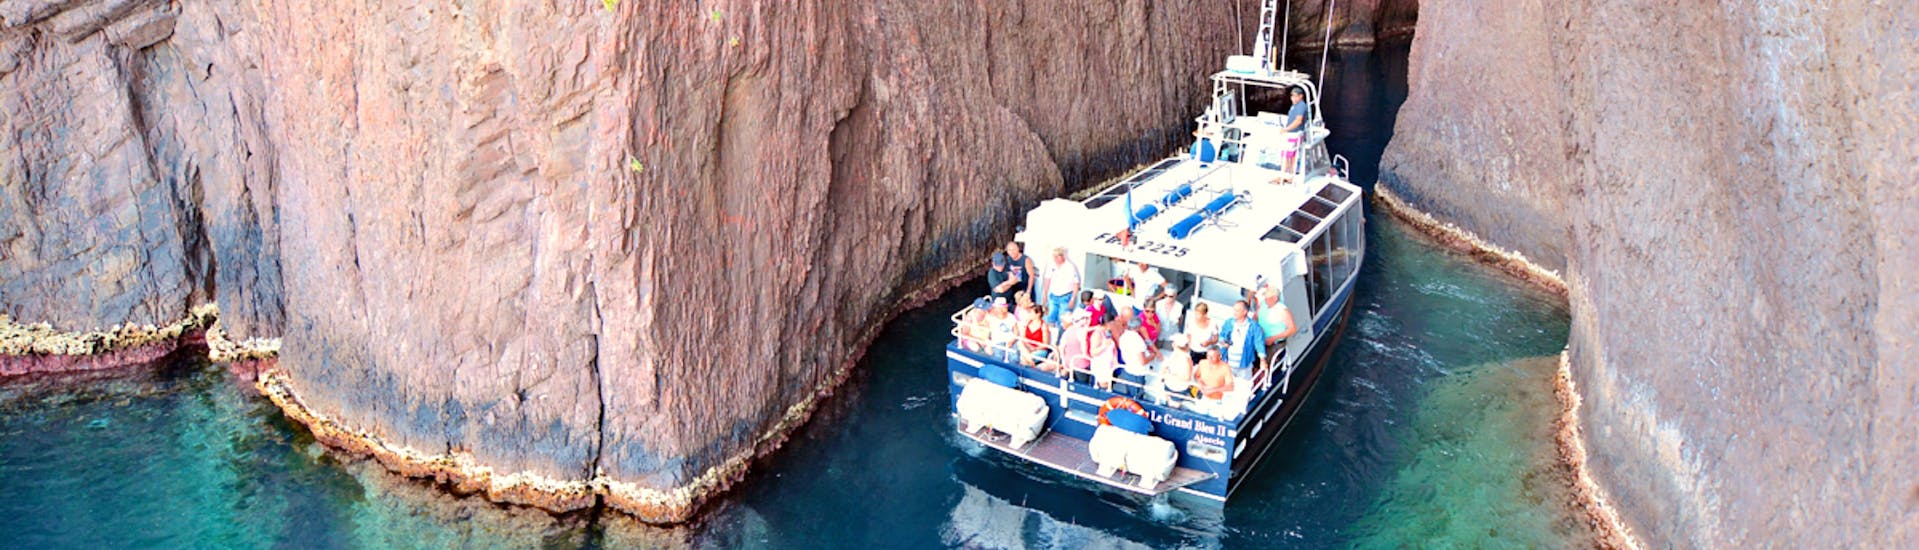 Delle persone si divertono durante la Gita in barca a Scandola con sosta pranzo nel Golfo di Girolata